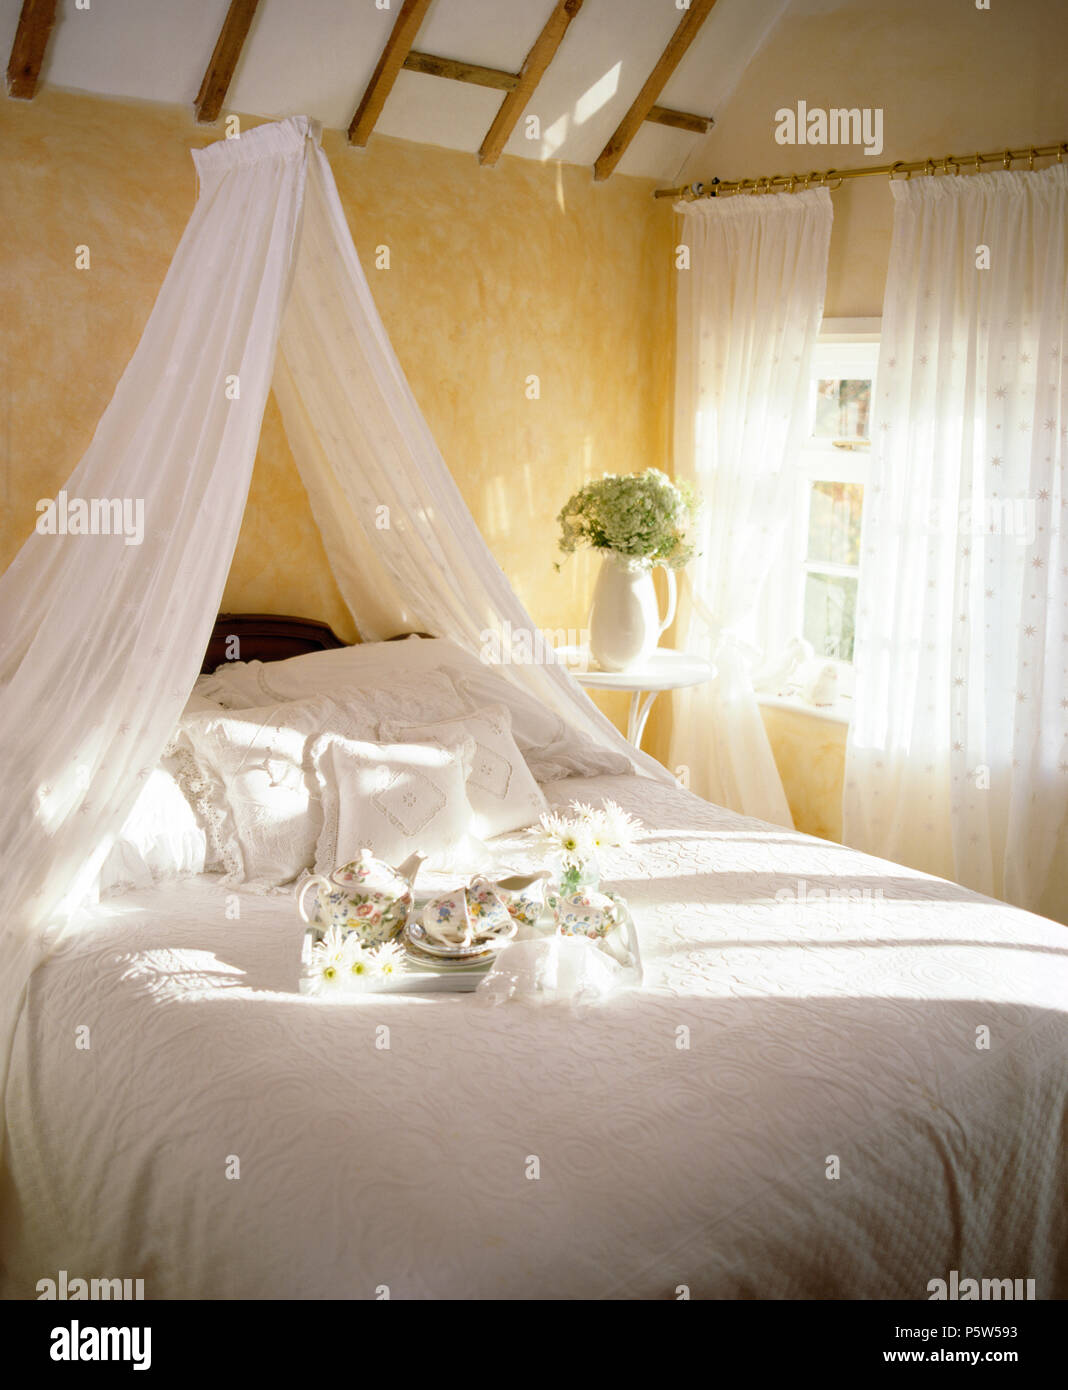 Weißer voile Gardinen über dem Bett mit weißer Bettwäsche im Cottage Schlafzimmer mit weißem voile Gardinen am Fenster Stockfoto